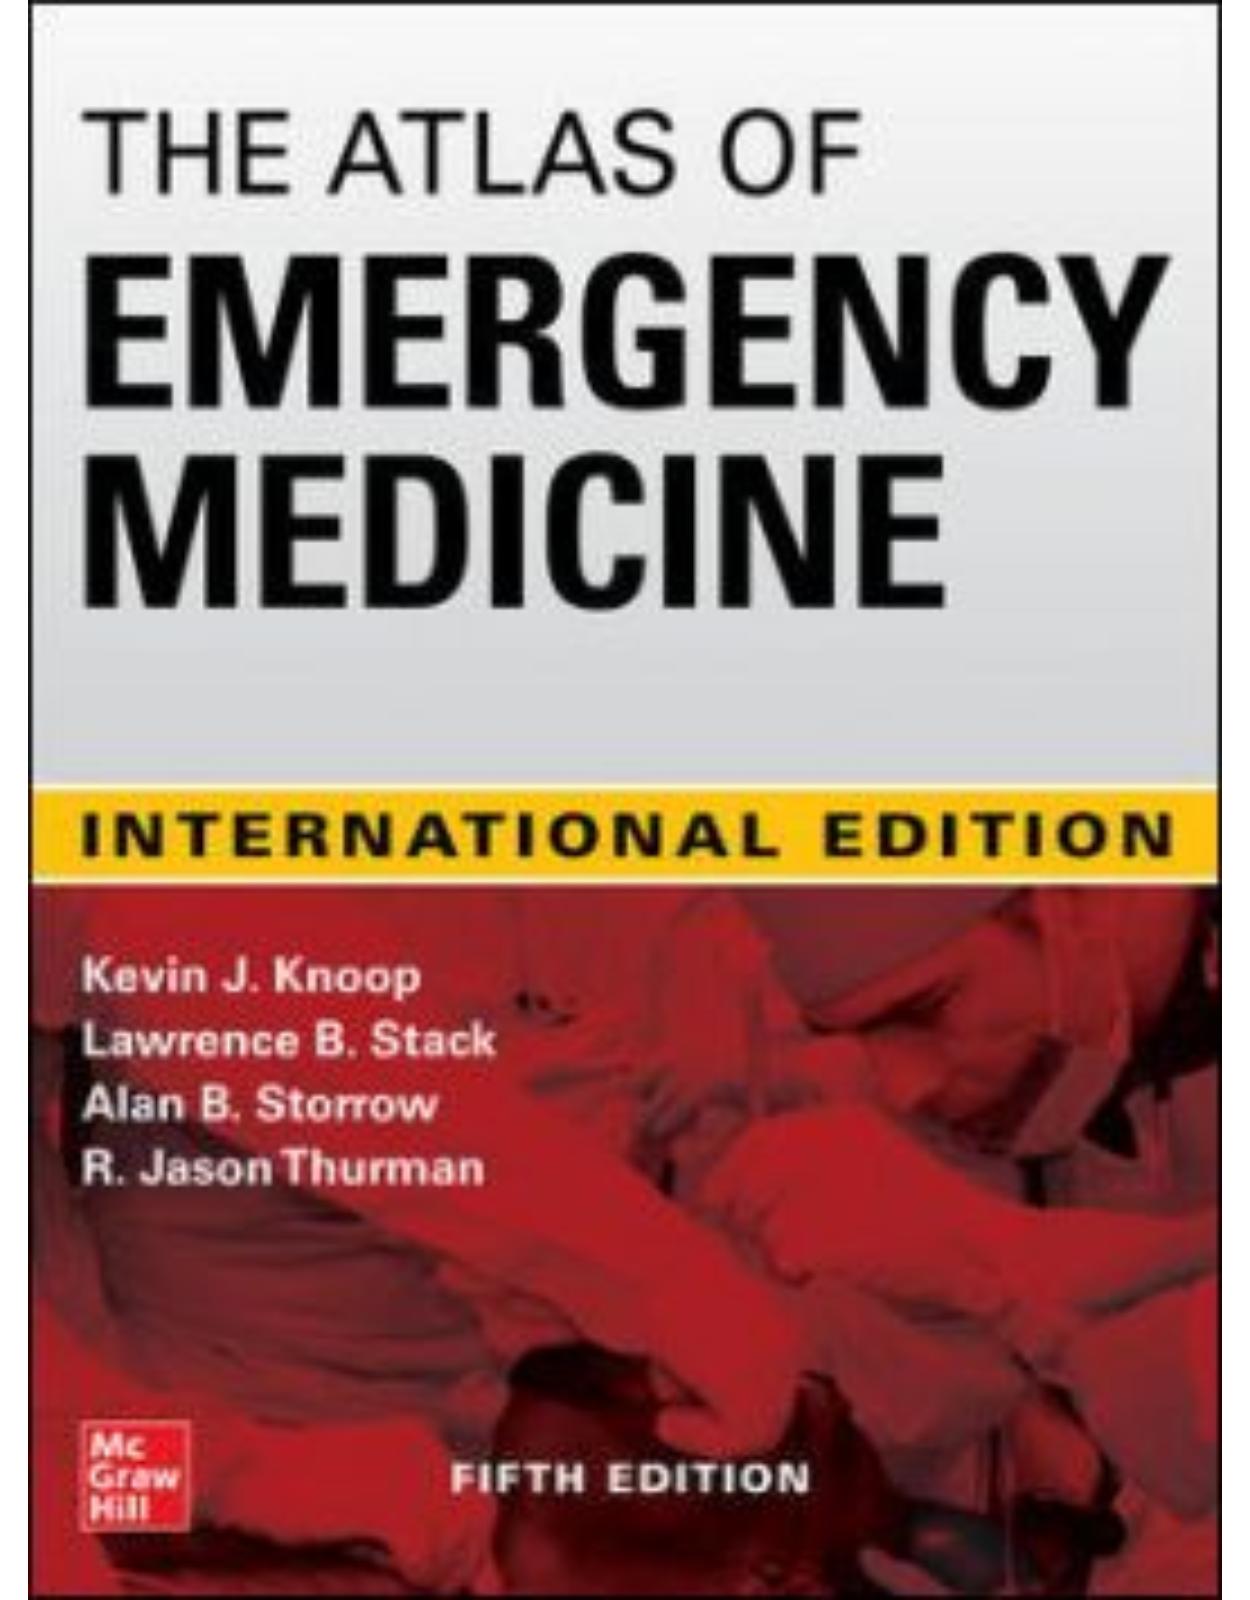  Atlas of Emergency Medicine 5th Edition